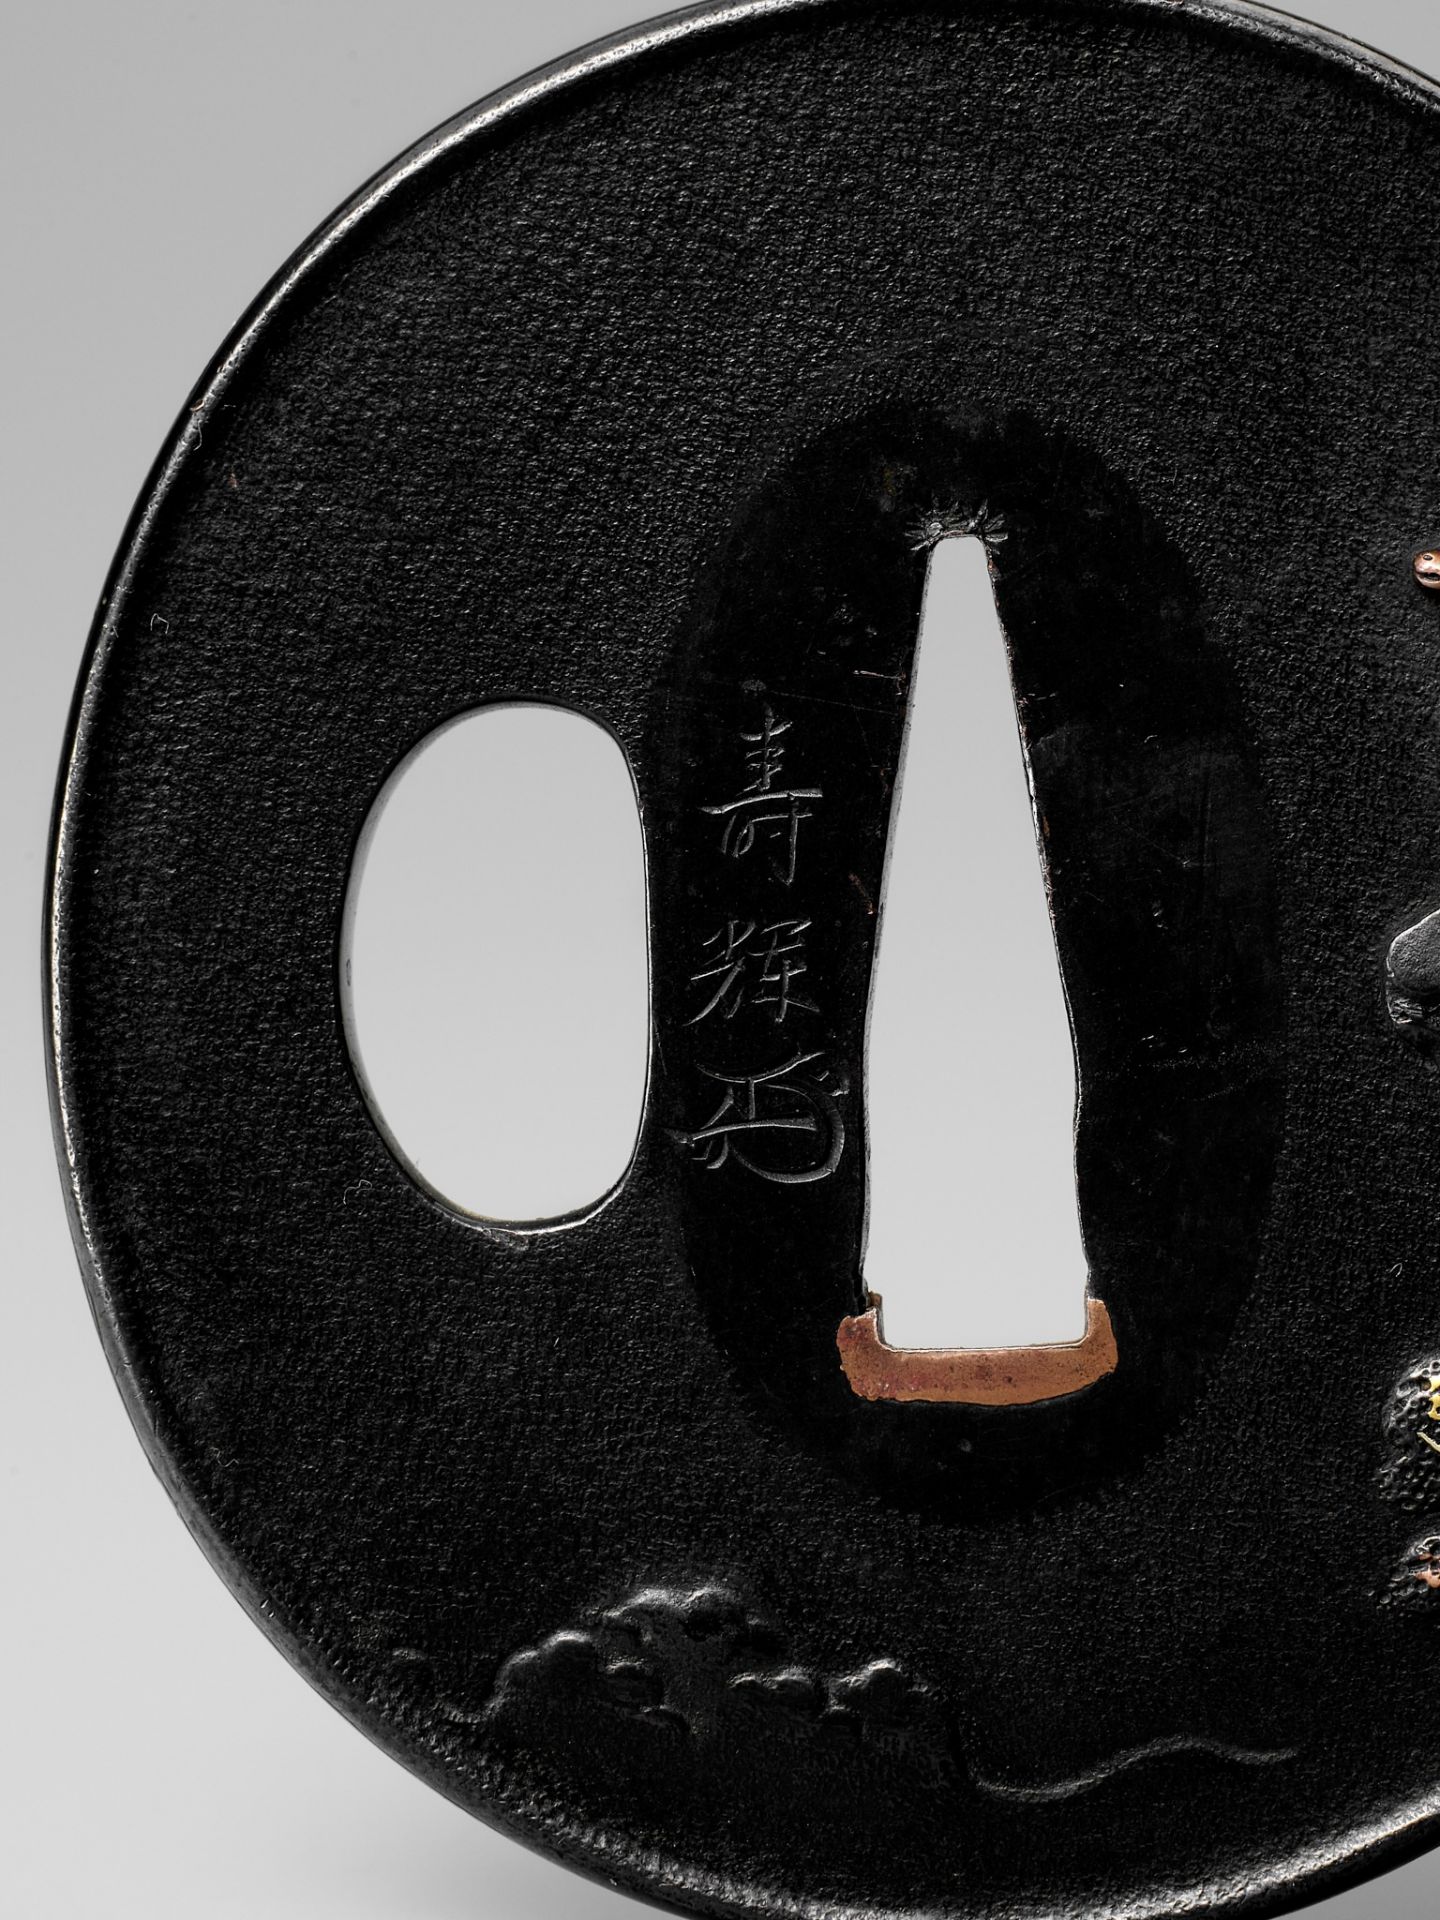 TOSHITERU: A FINE SHAKUDO TSUBA WITH DEER - Image 5 of 5